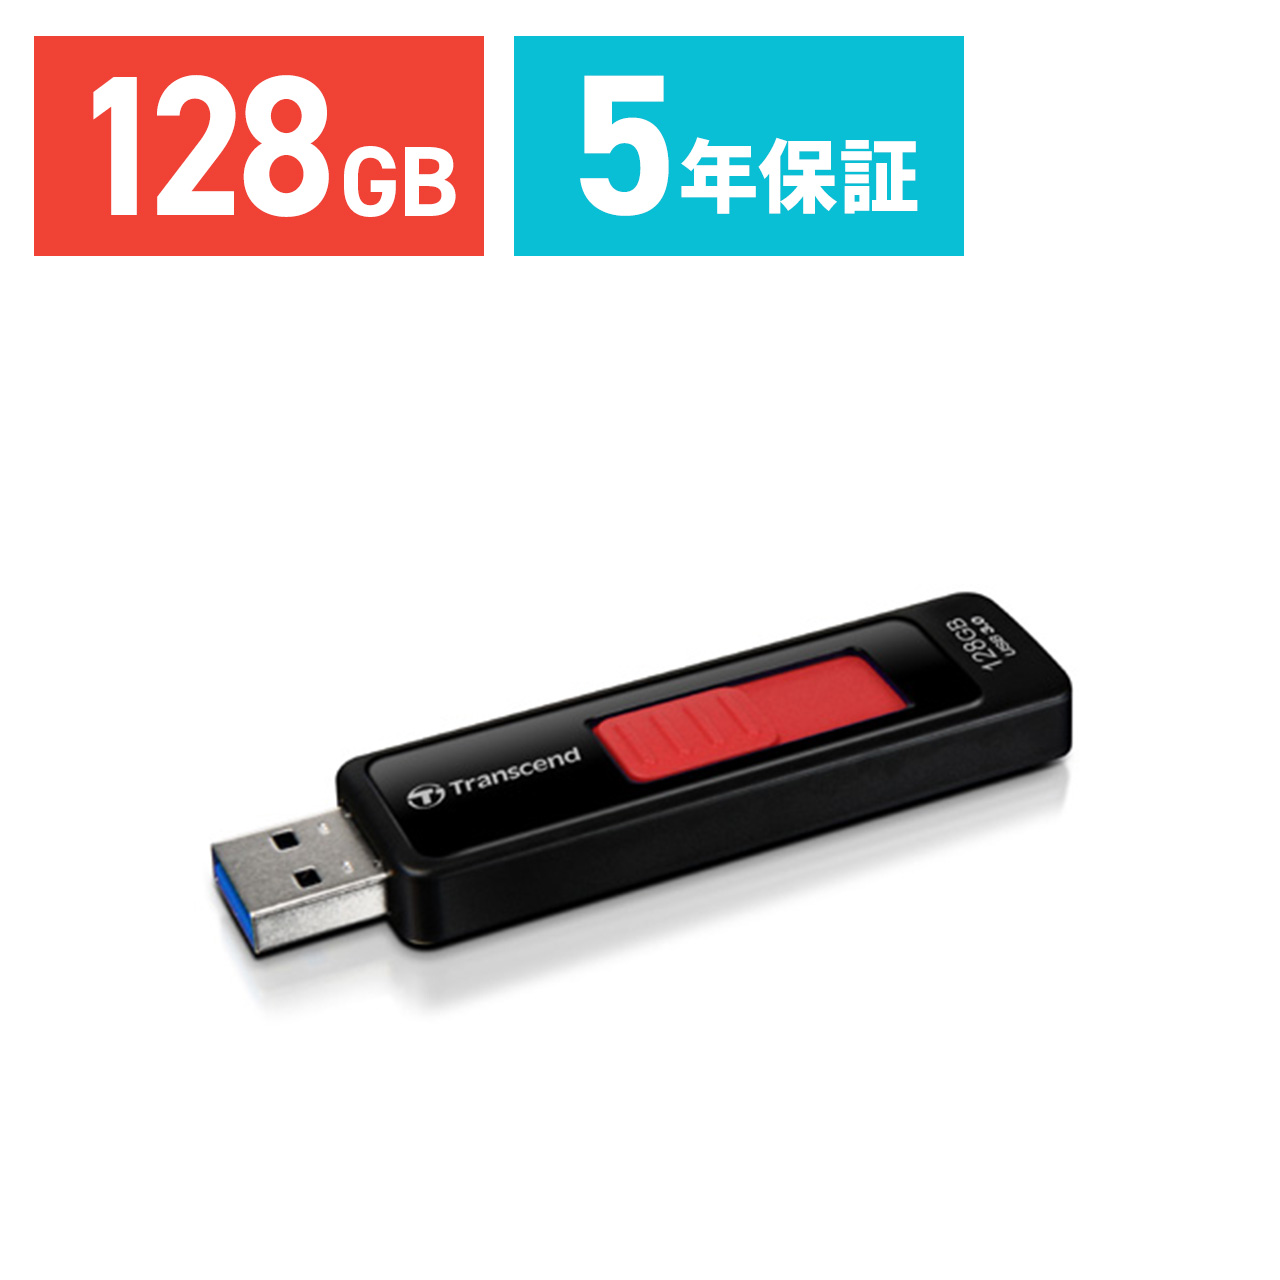 Transcend USBメモリ 128GB USB3.1(Gen1) キャップレス スライド式 JetFlash 760 ブラック  TS128GJF760 TS128GJF760の販売商品 |通販ならサンワダイレクト